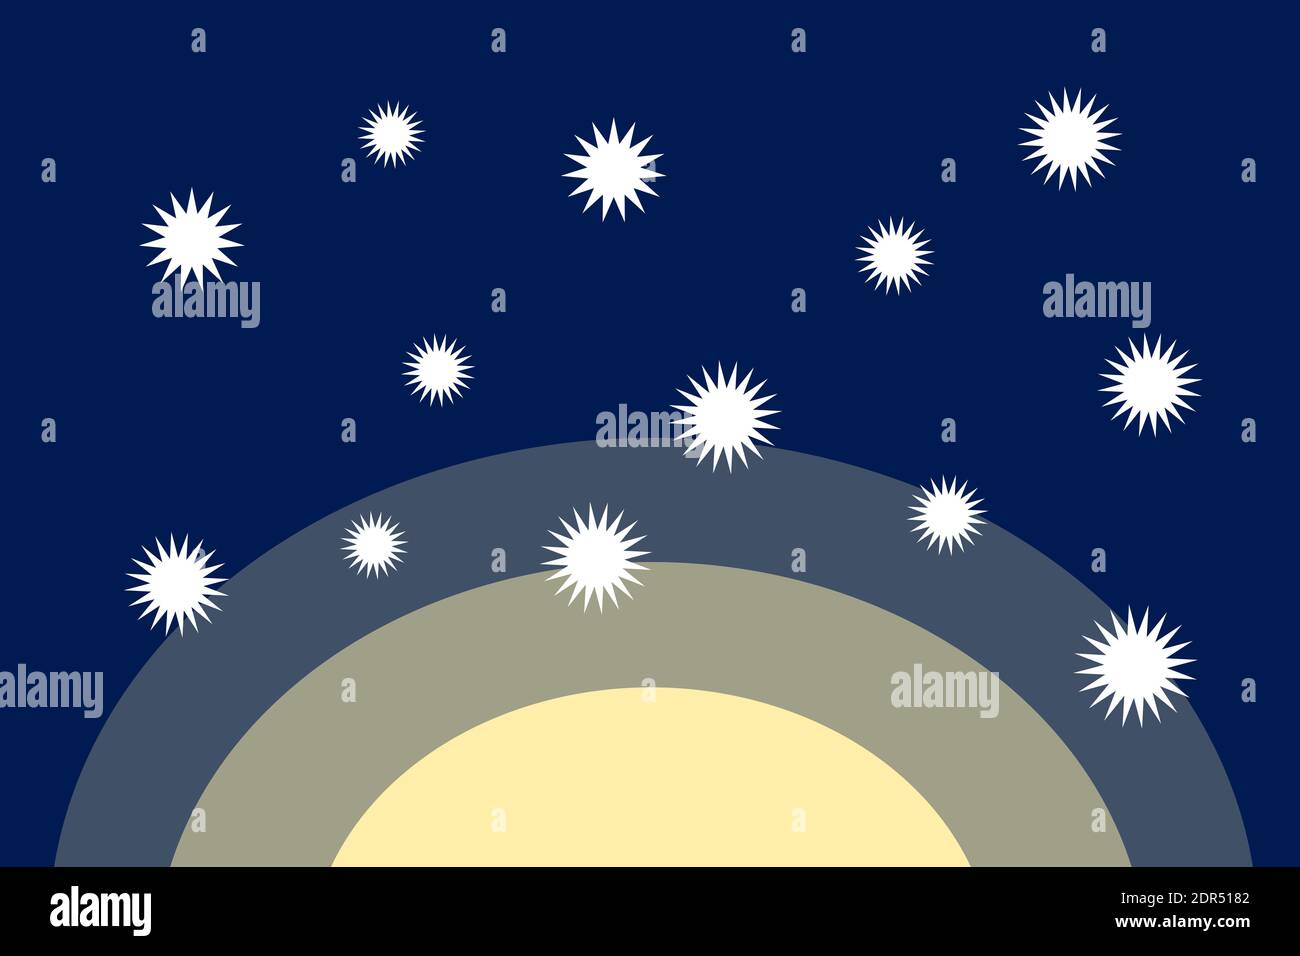 Contaminación lumínica - el cielo nocturno con estrellas está contaminado por luz amarilla artificial. Ilustración vectorial Foto de stock